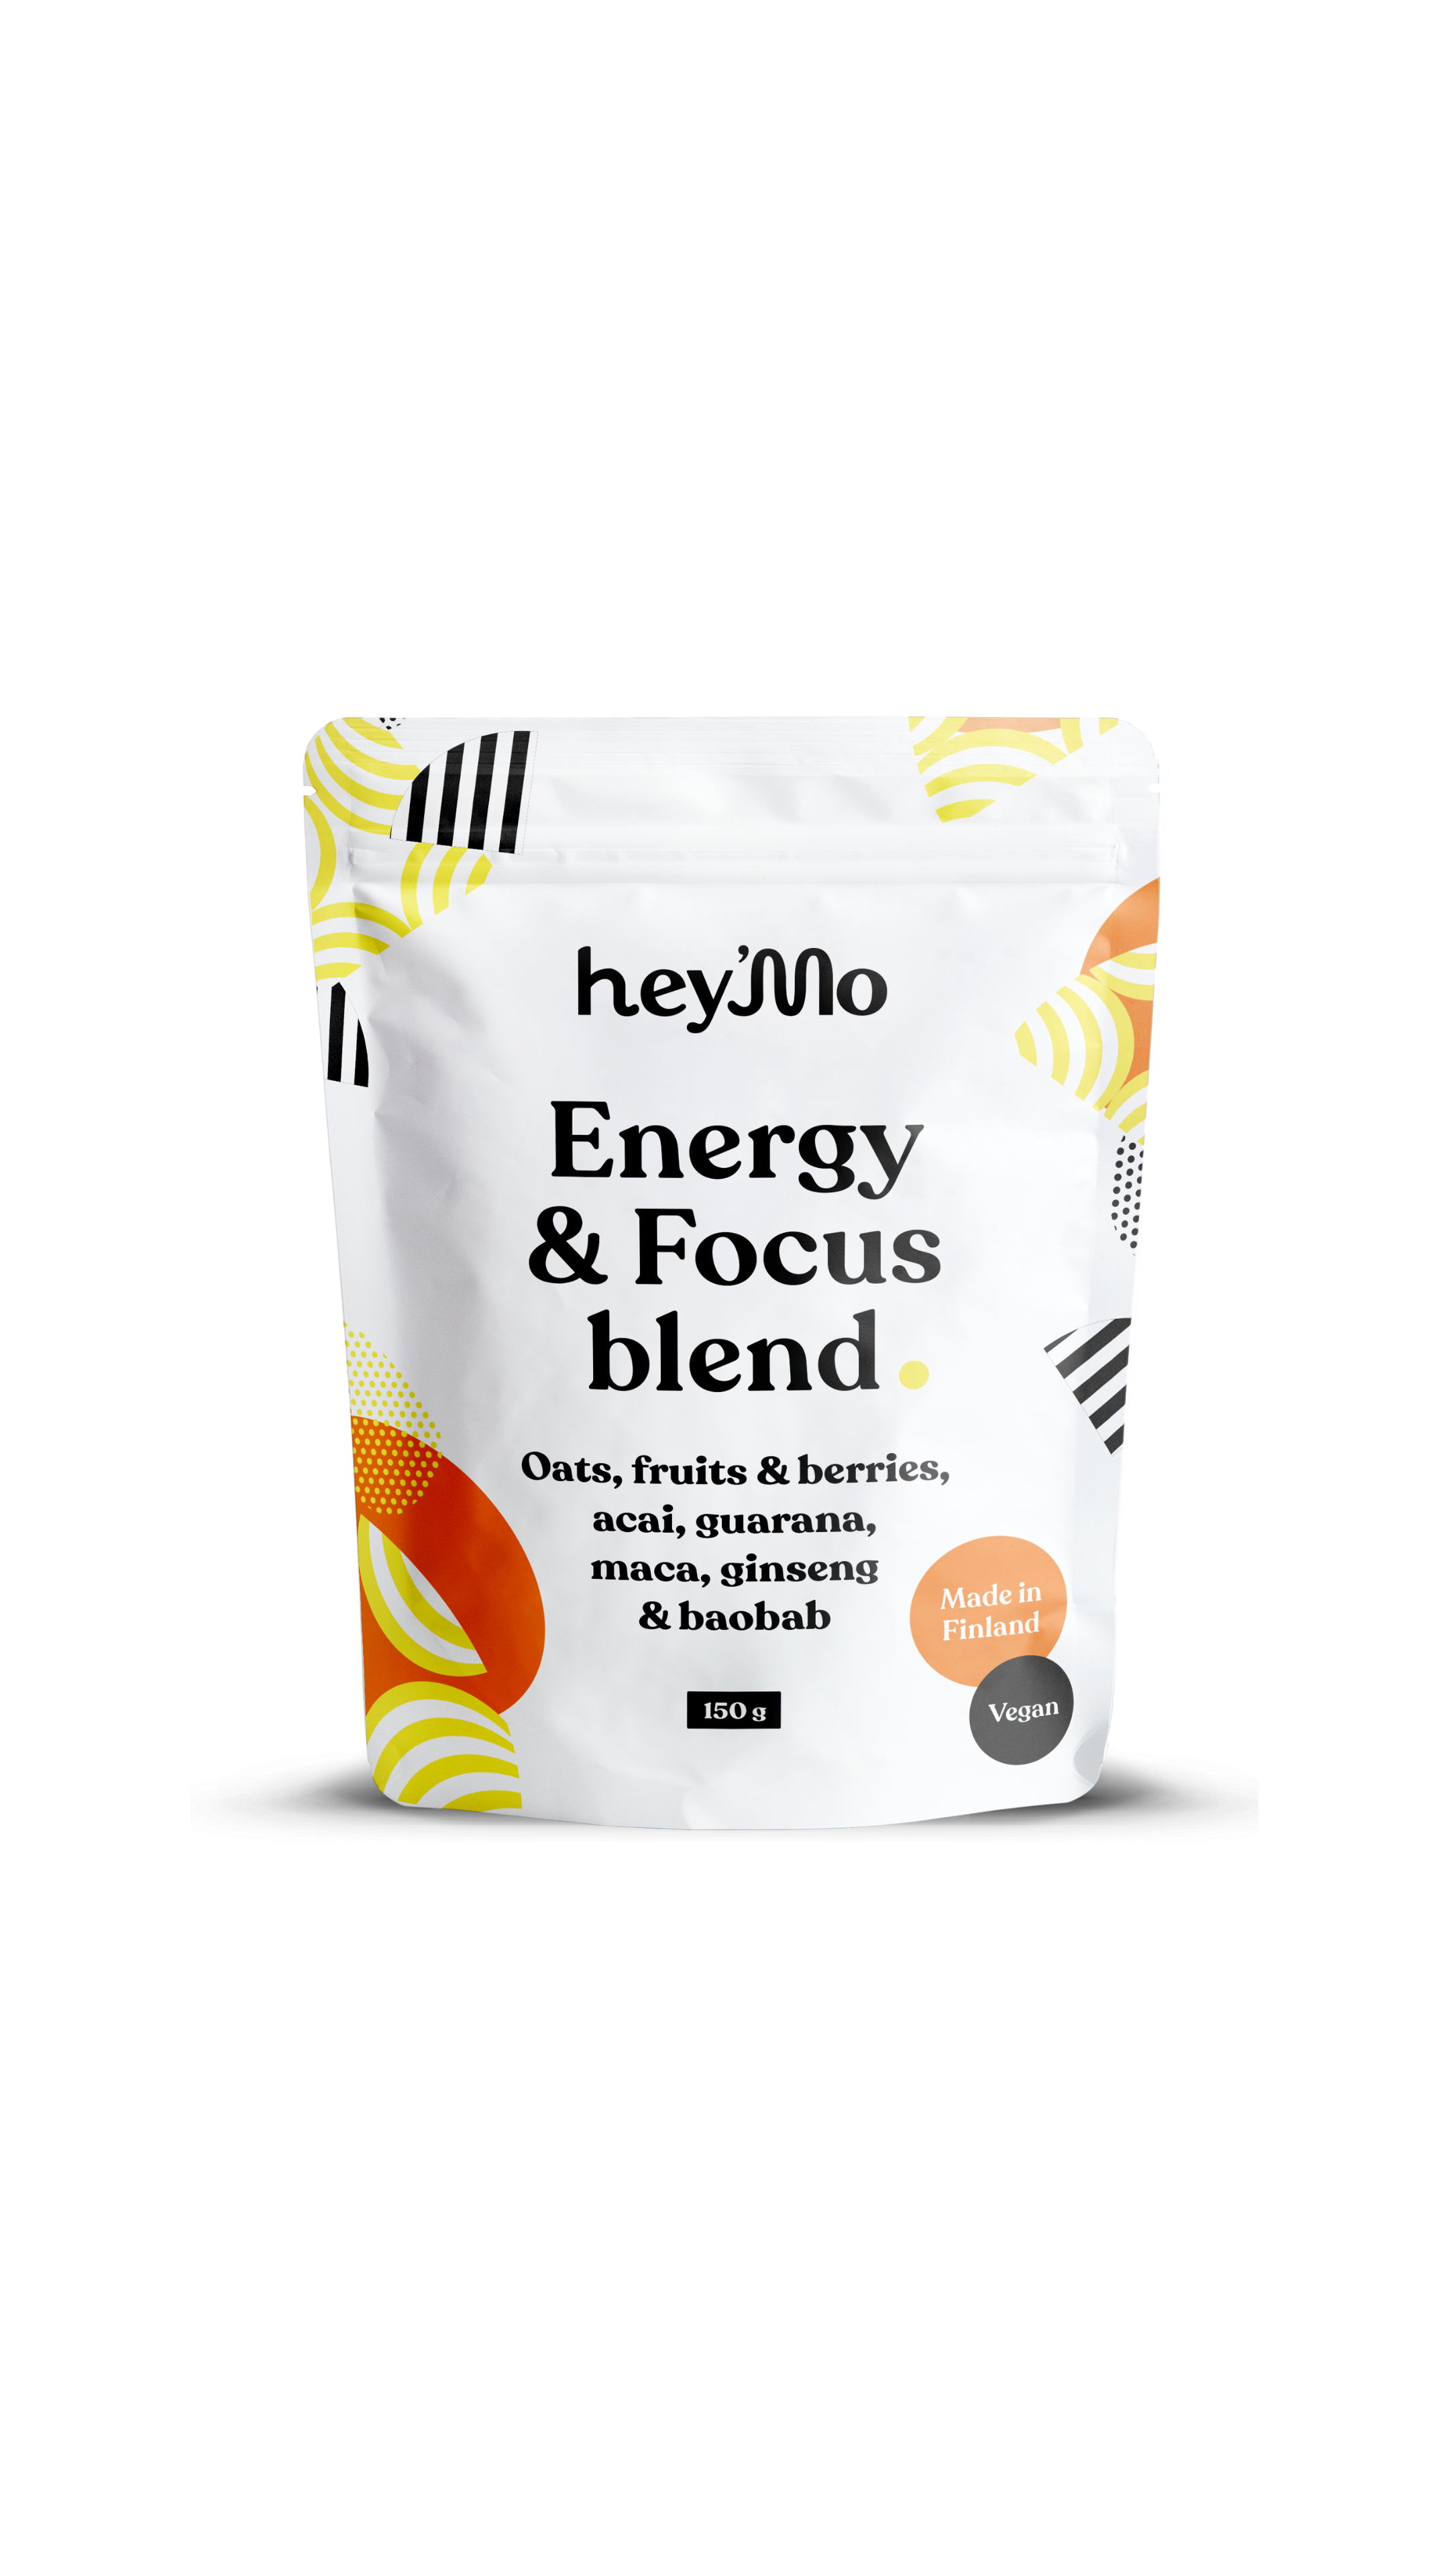 hey'Mo Energy & Focus Blend